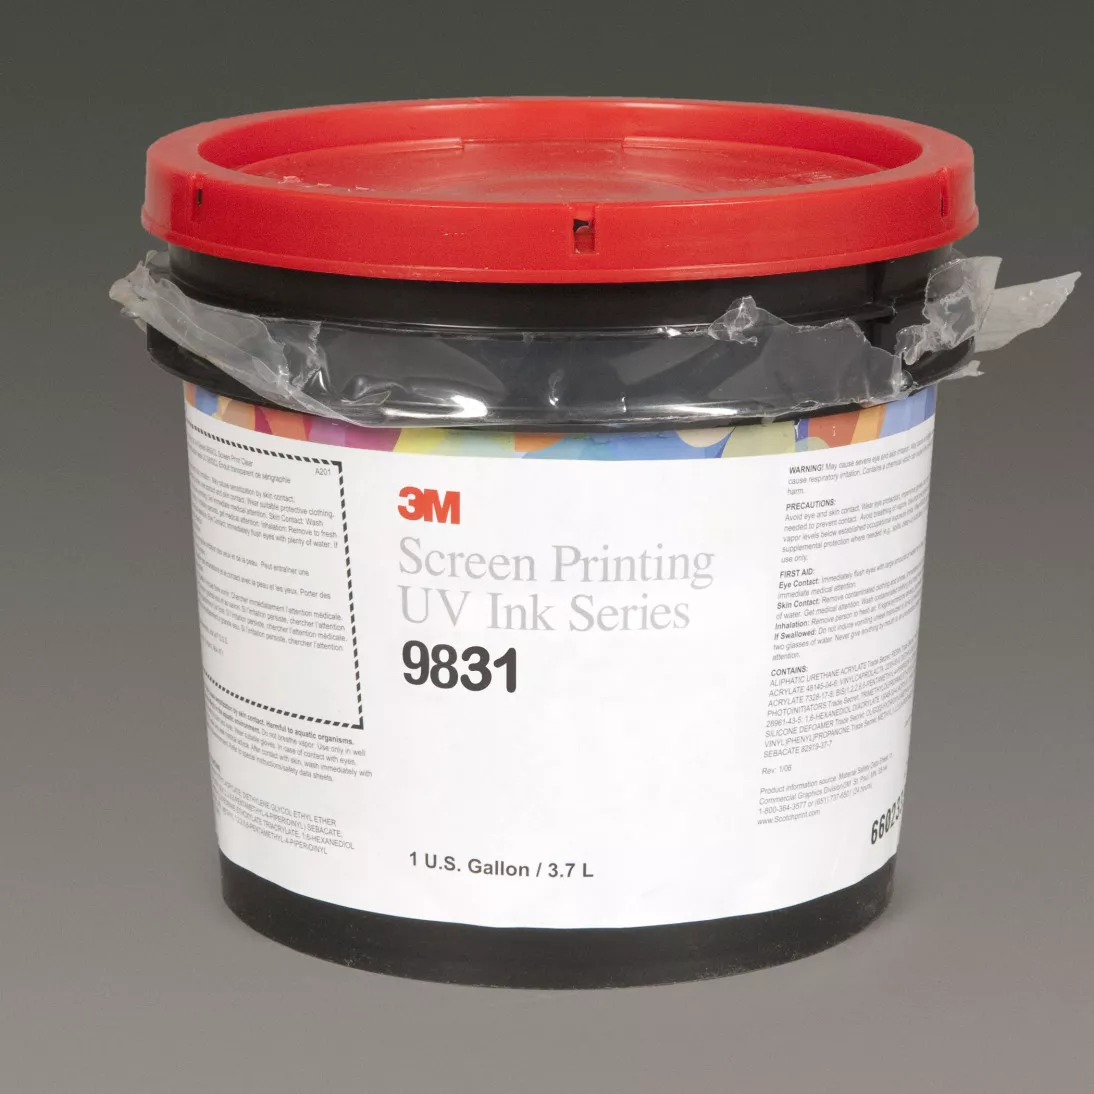 3M™ Screen Printing UV Ink 9831, Transparent Orange, 1 Gallon Container